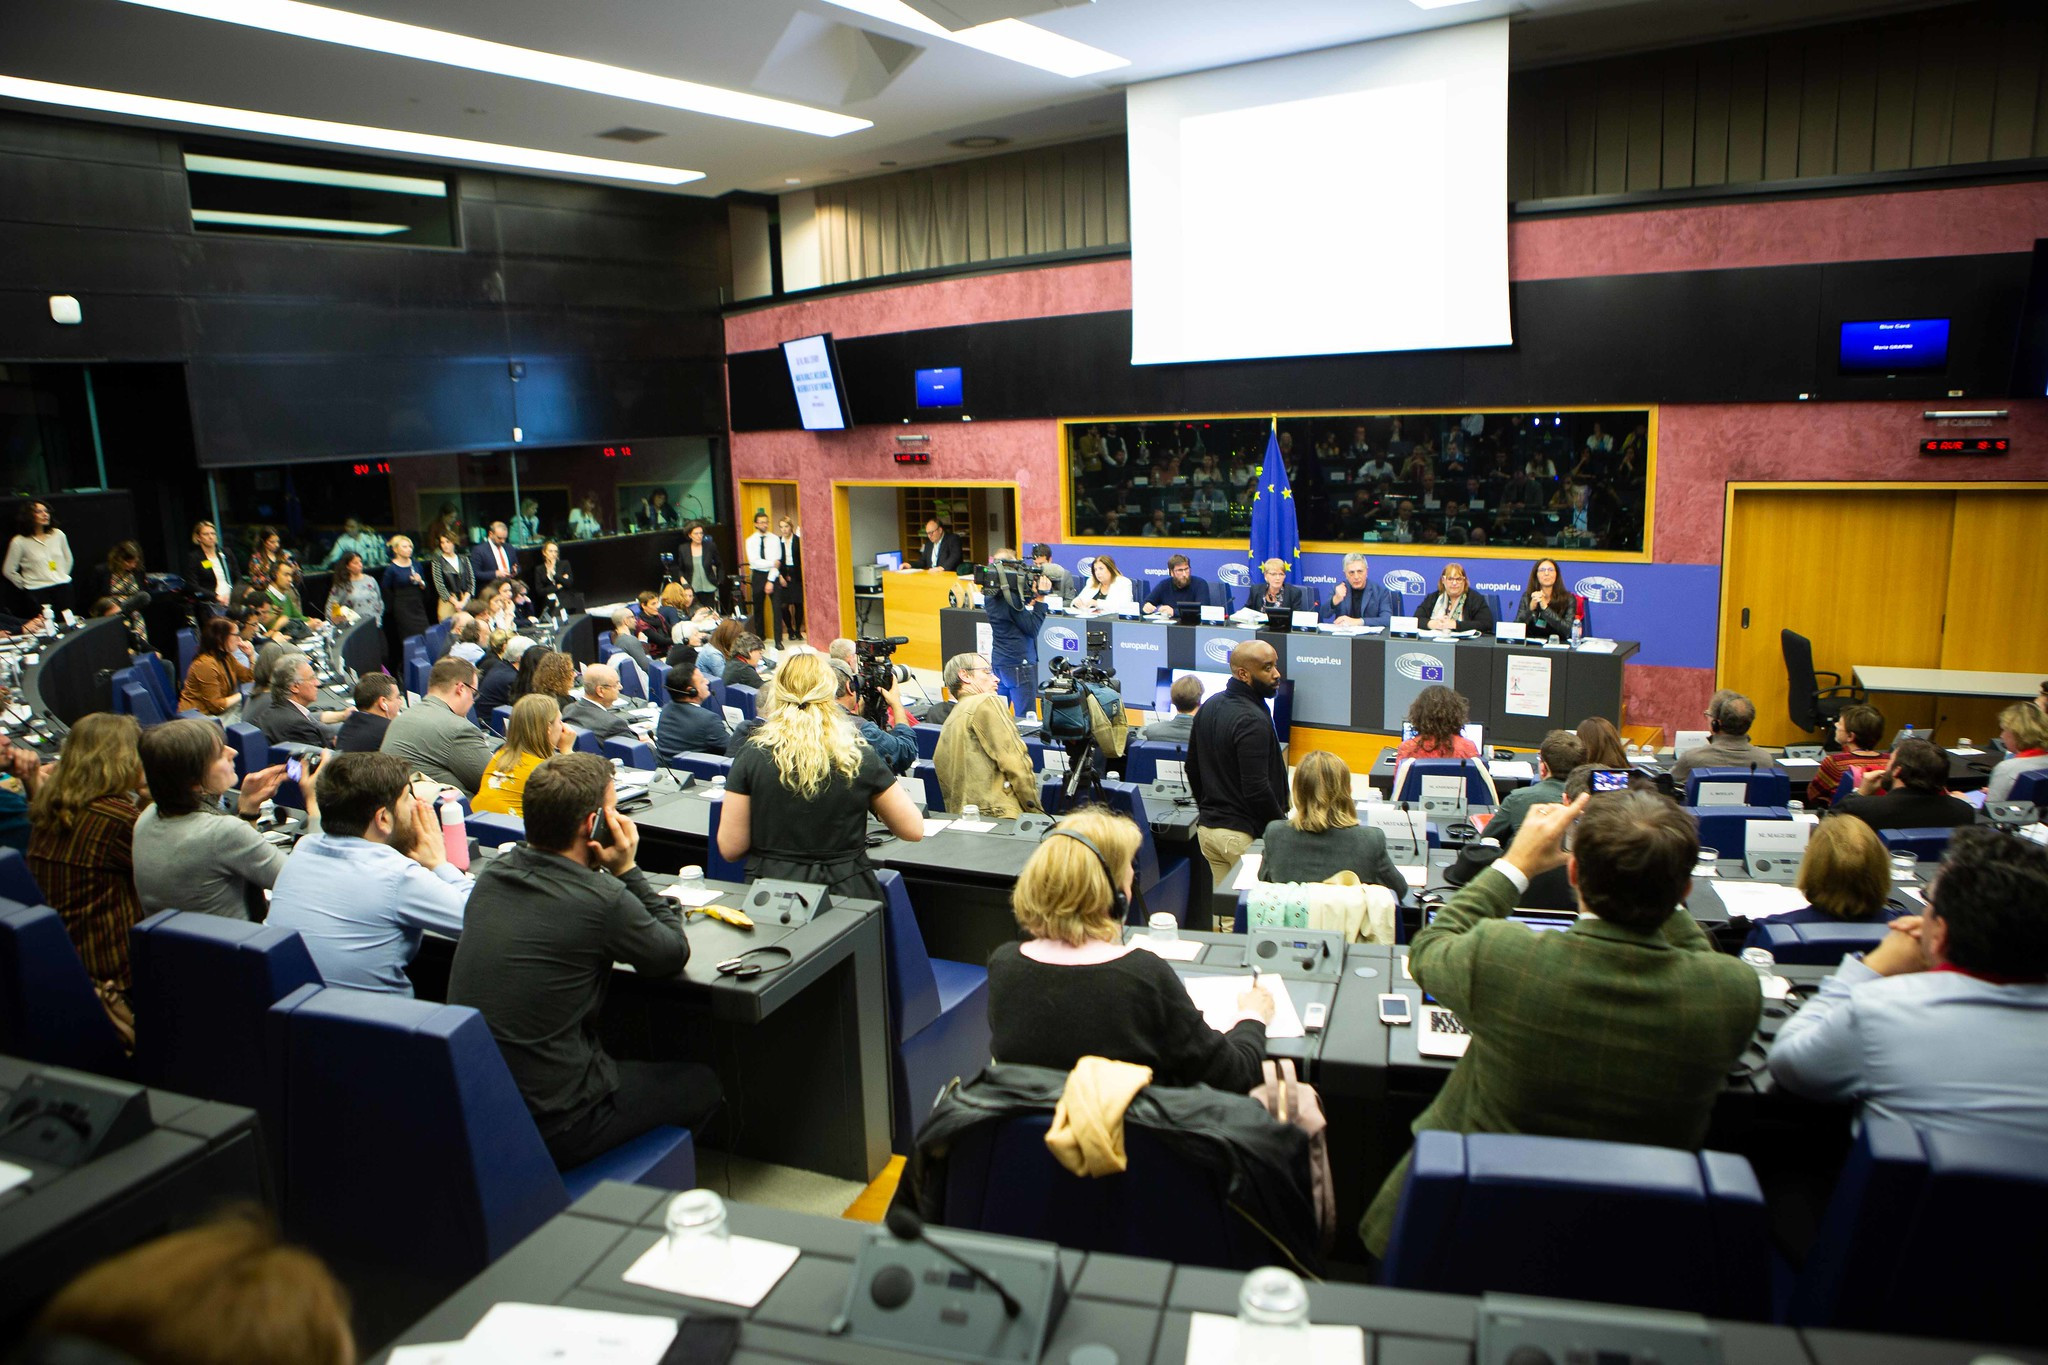 Η Αλήθεια έχει σημασία: Ισχυρά μηνύματα στην βράβευση των μαρτύρων δημοσίου συμφέροντος στο Ευρωκοινοβούλιο